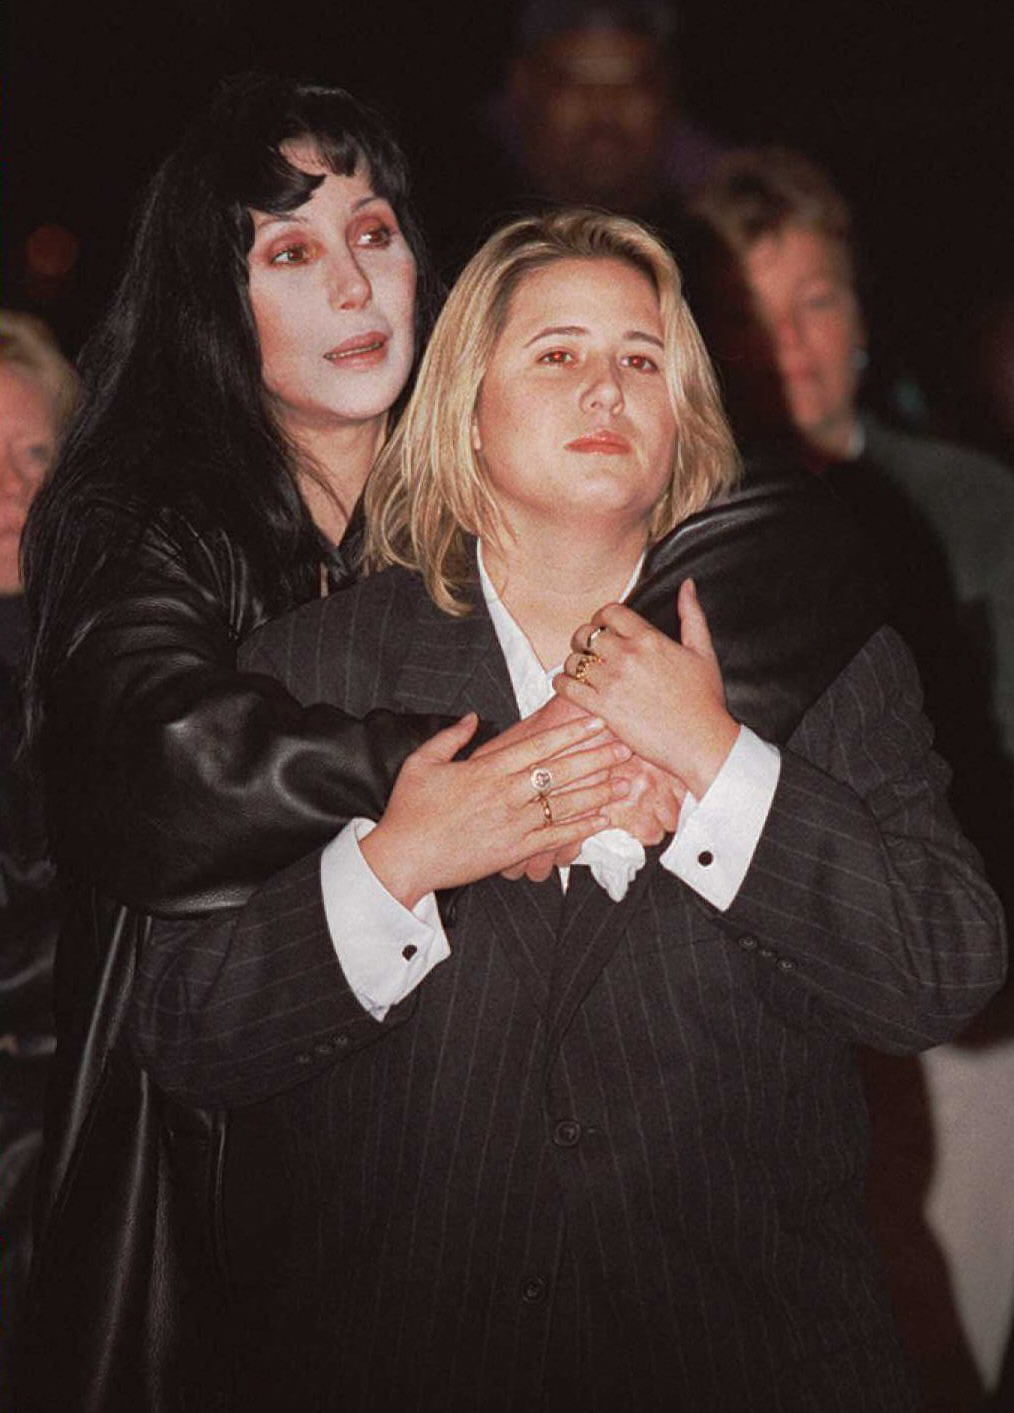 Cher abraza a Chastity Bono durante una manifestación por el "Día Nacional de Salir del armario" en Washington DC, el 11 de octubre de 1996 | Foto: Getty Images